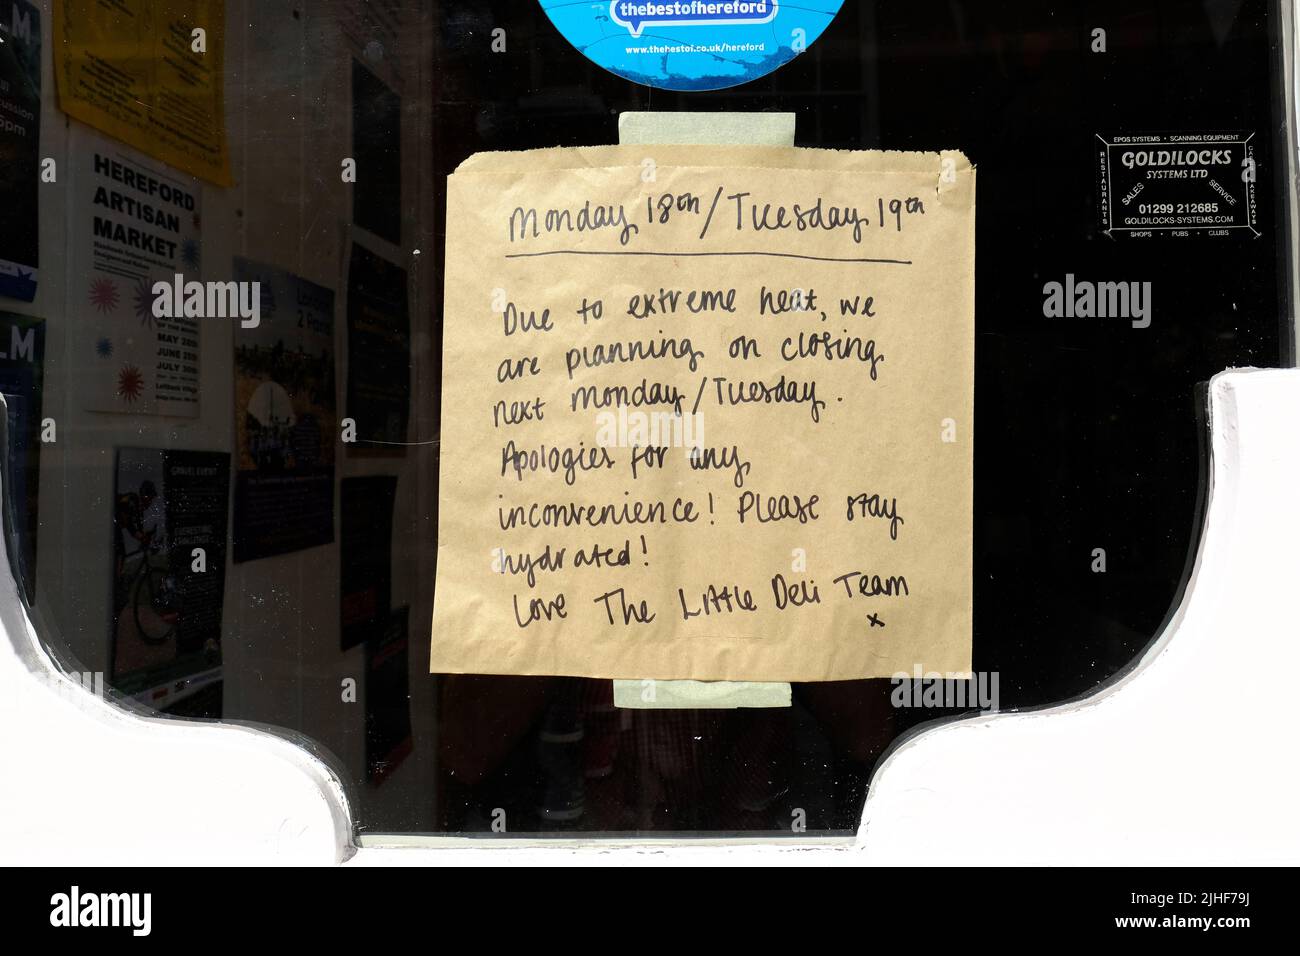 Hereford, Herefordshire, Reino Unido - Lunes 18th de julio de 2022 - Un cartel en una tienda de delicatessen dice que el negocio estará cerrado debido al calor extremo el lunes 18th y el martes 19th a medida que las temperaturas en el Reino Unido se aproximen a los 40c. Foto Steven May / Alamy Live News Foto de stock